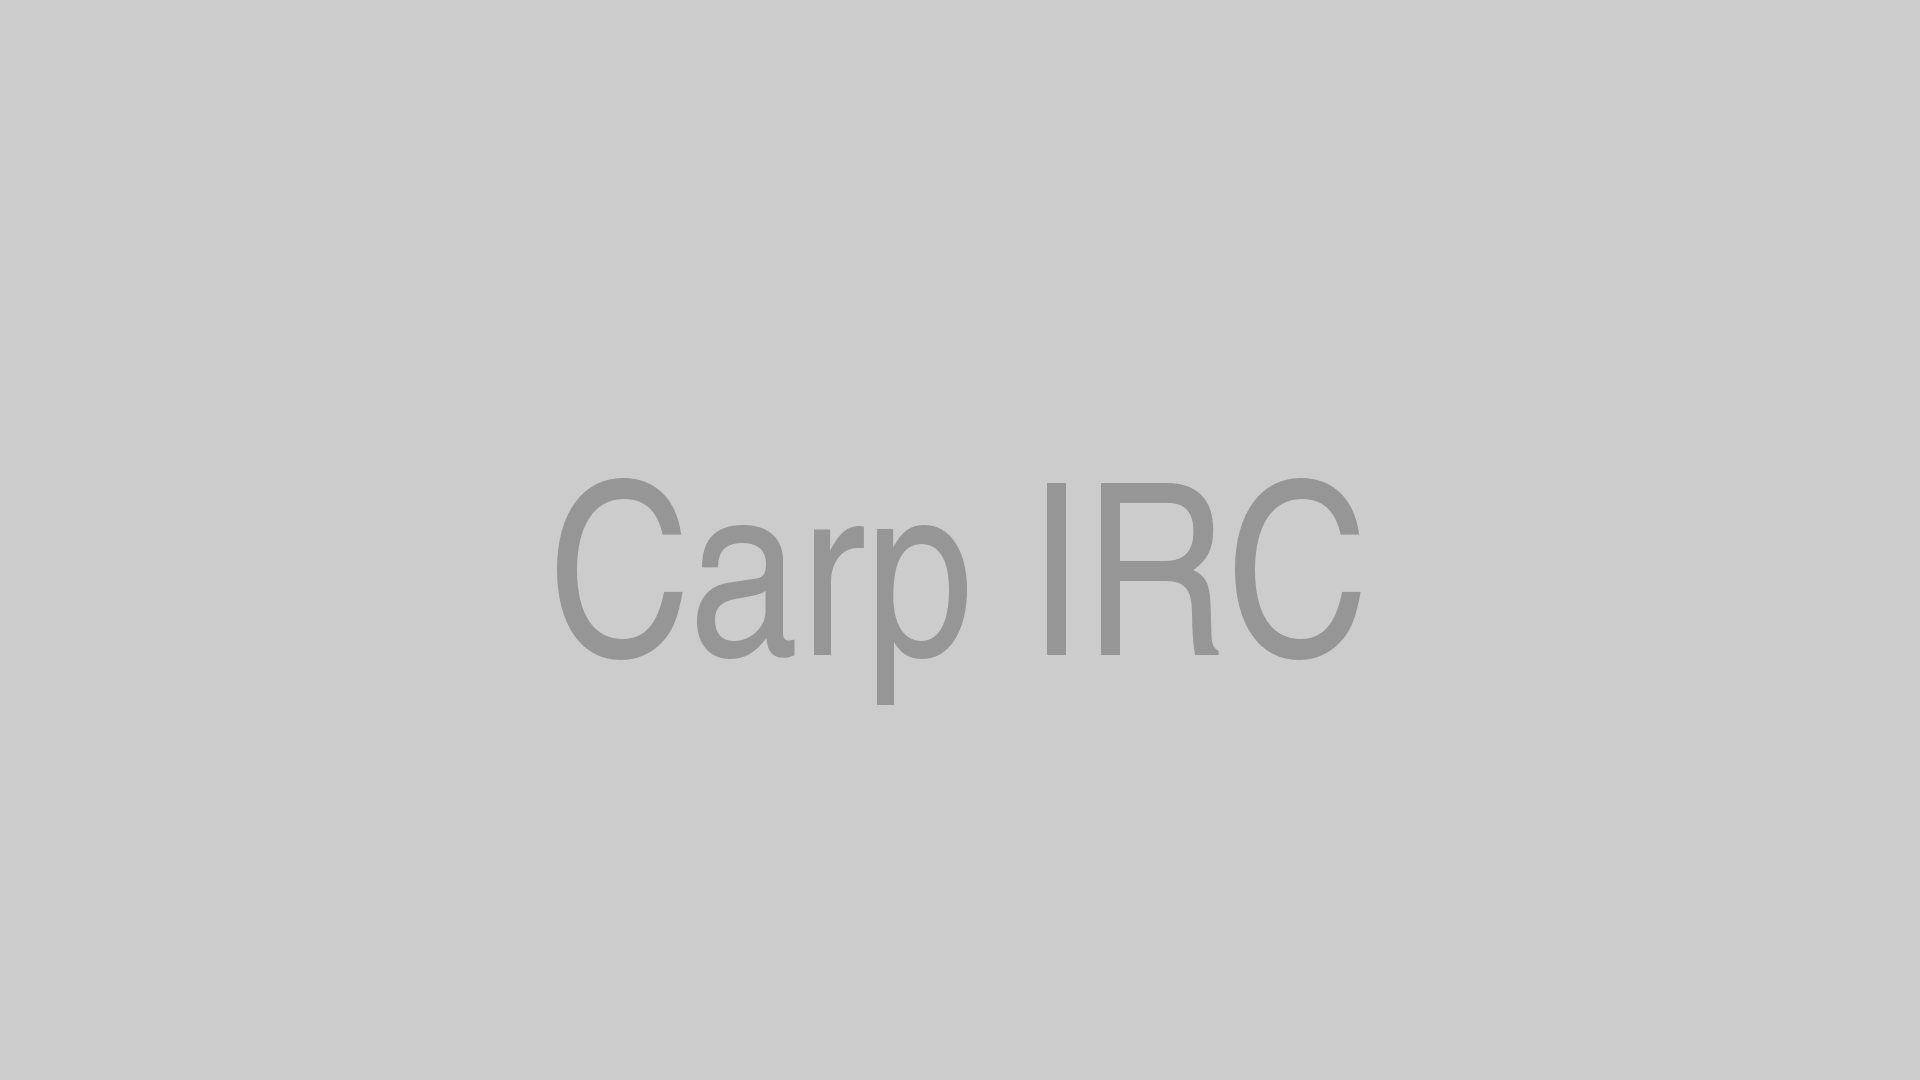 Carp IRC